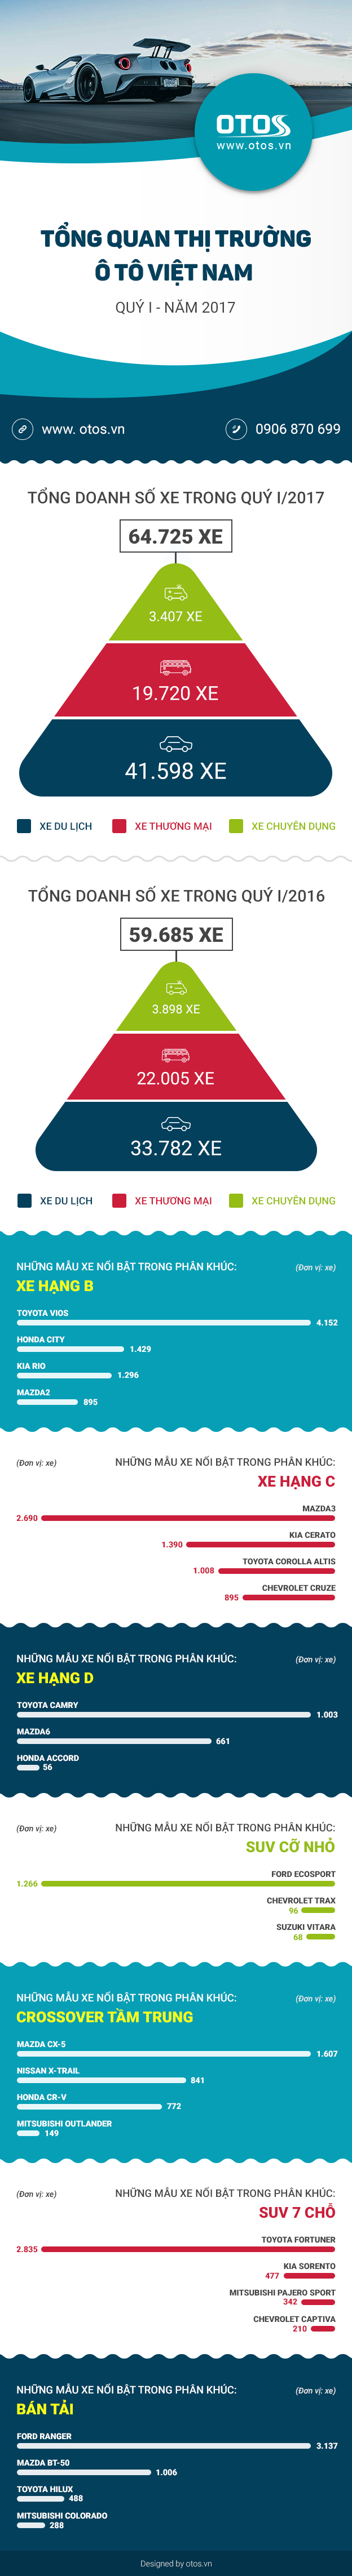 [Infographic] Tổng quan thị trường ô tô Việt Nam quý I/2017